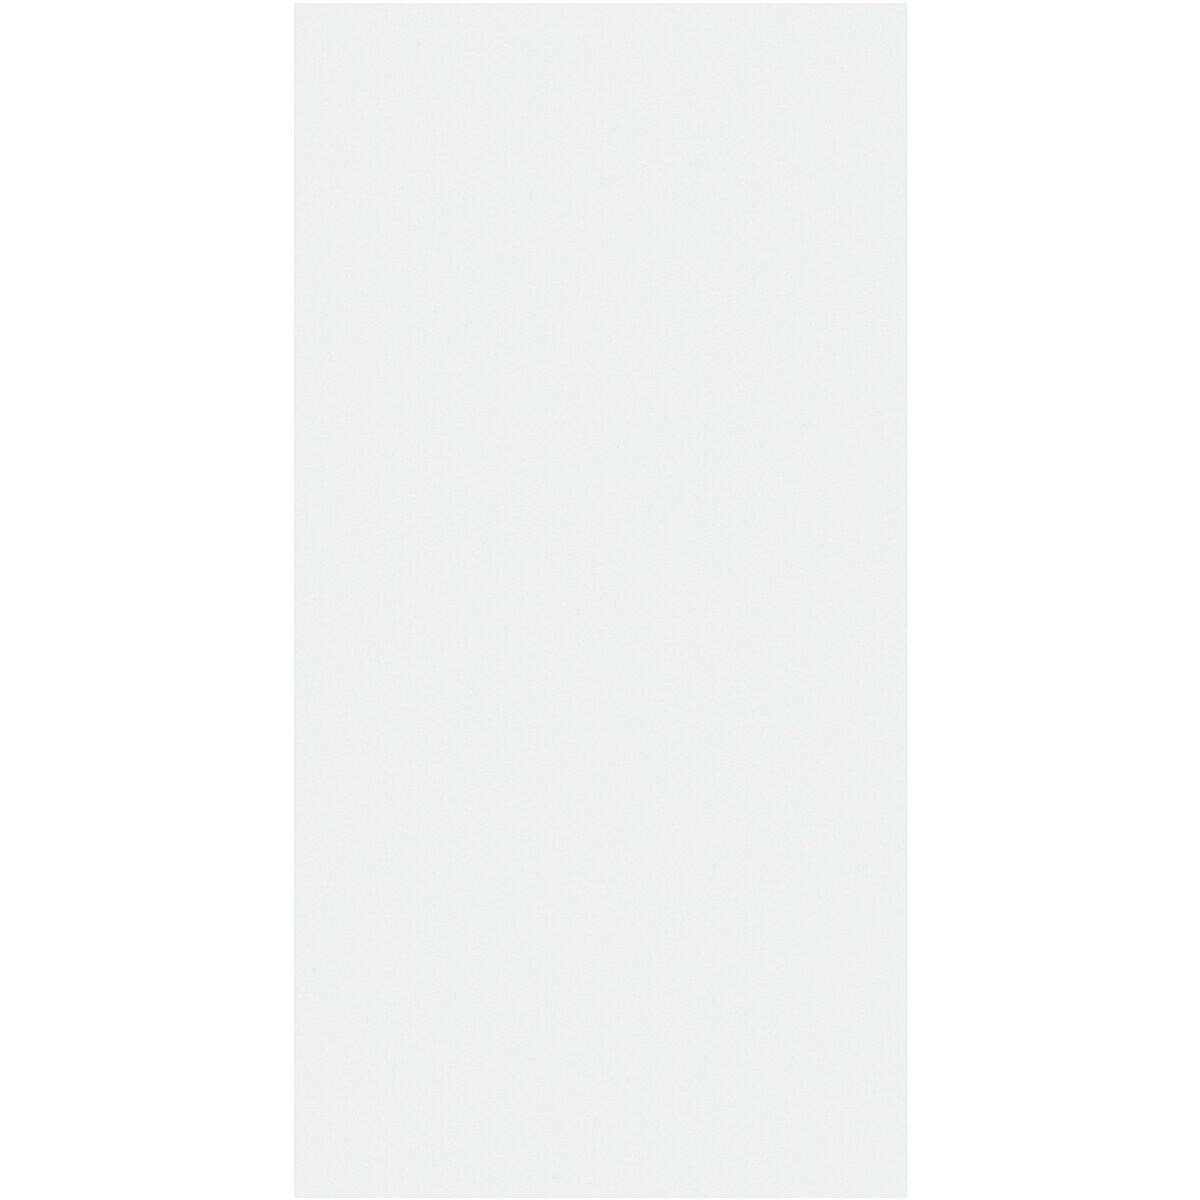 Legamaster Whiteboardfolie WRAP-UP 7-106212 101 x 1200 cm